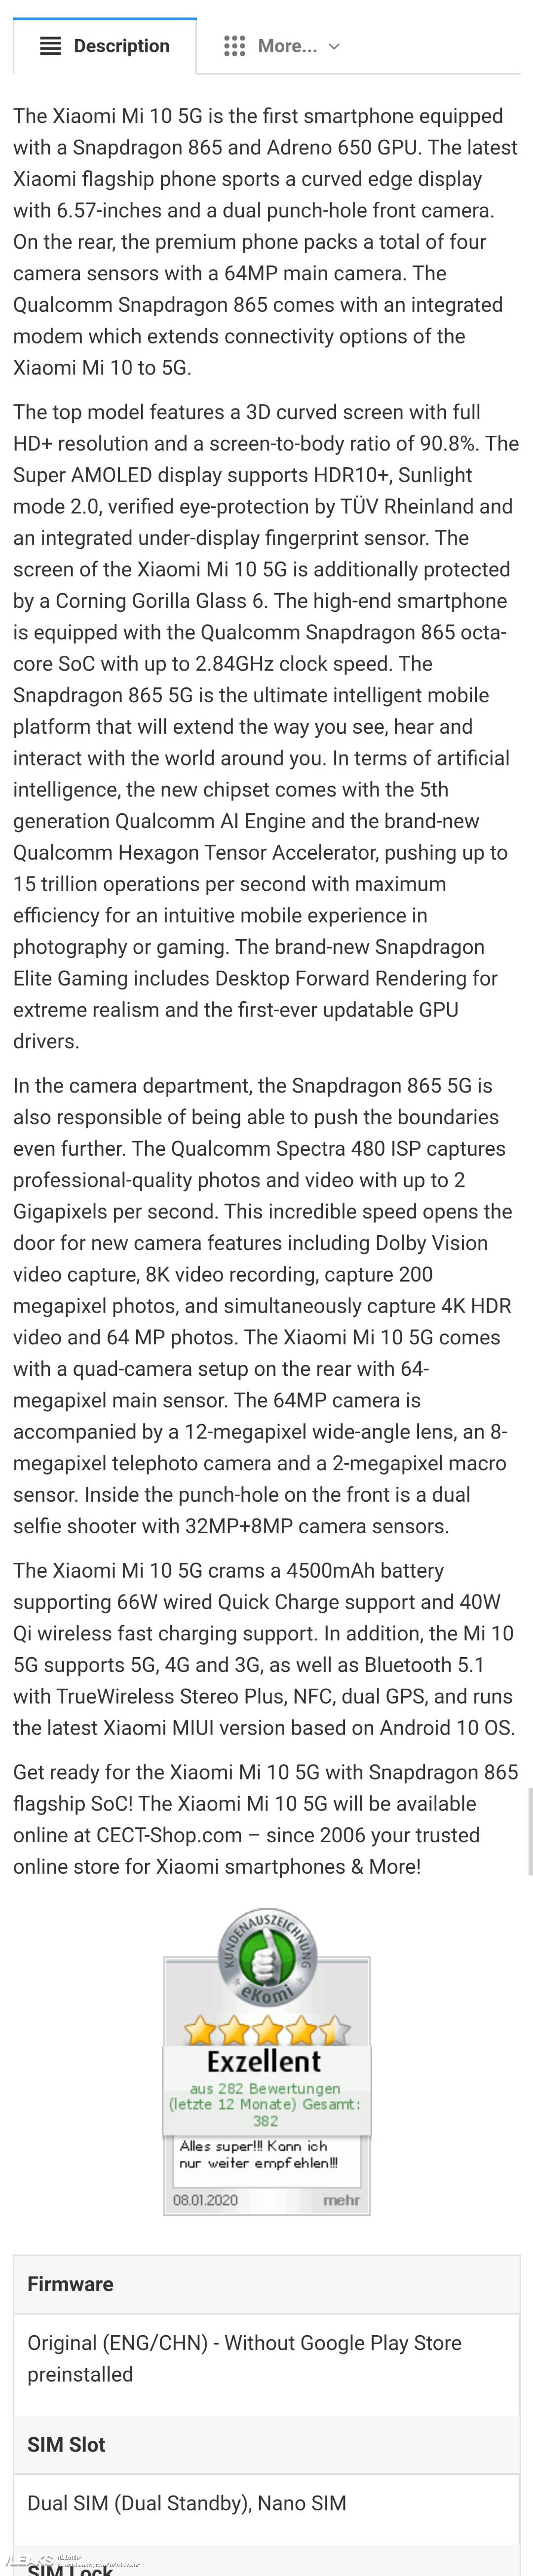 Xiaomi Mi 10 lộ toàn bộ thông số cấu hình
với Snapdragon 865, màn hình 90Hz, giá từ 15.5 triệu